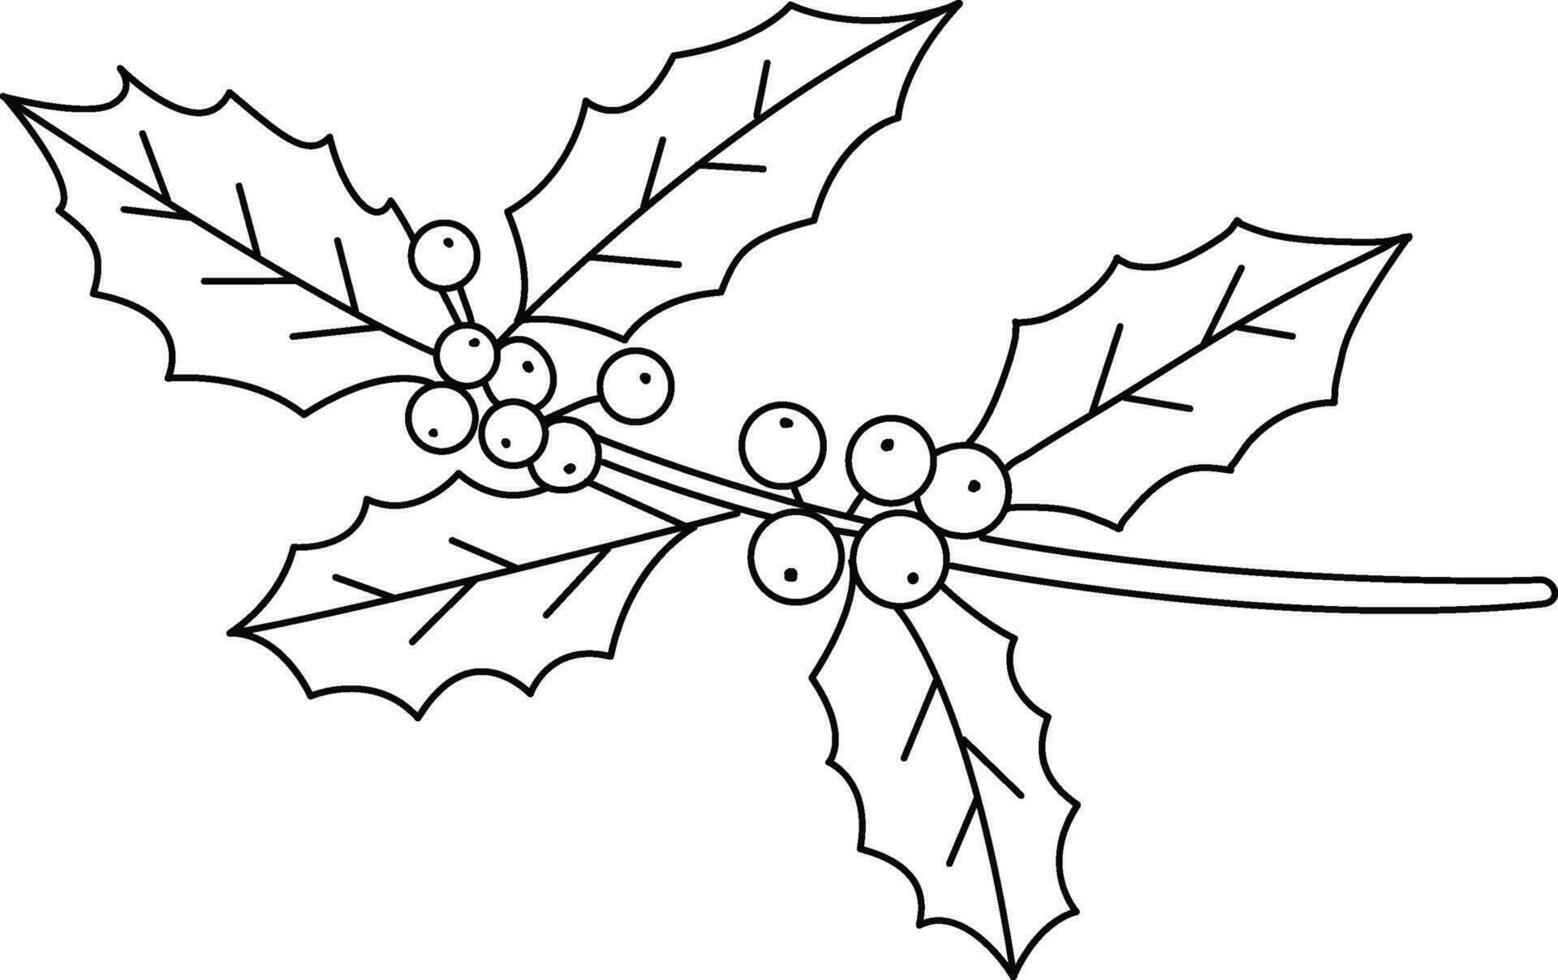 garabatear simple, linda dibujado a mano acebo patrón, el acebo diseño usado Decorar Navidad tarjetas, invitaciones, coronas hermosa acebo hojas y bayas. vector